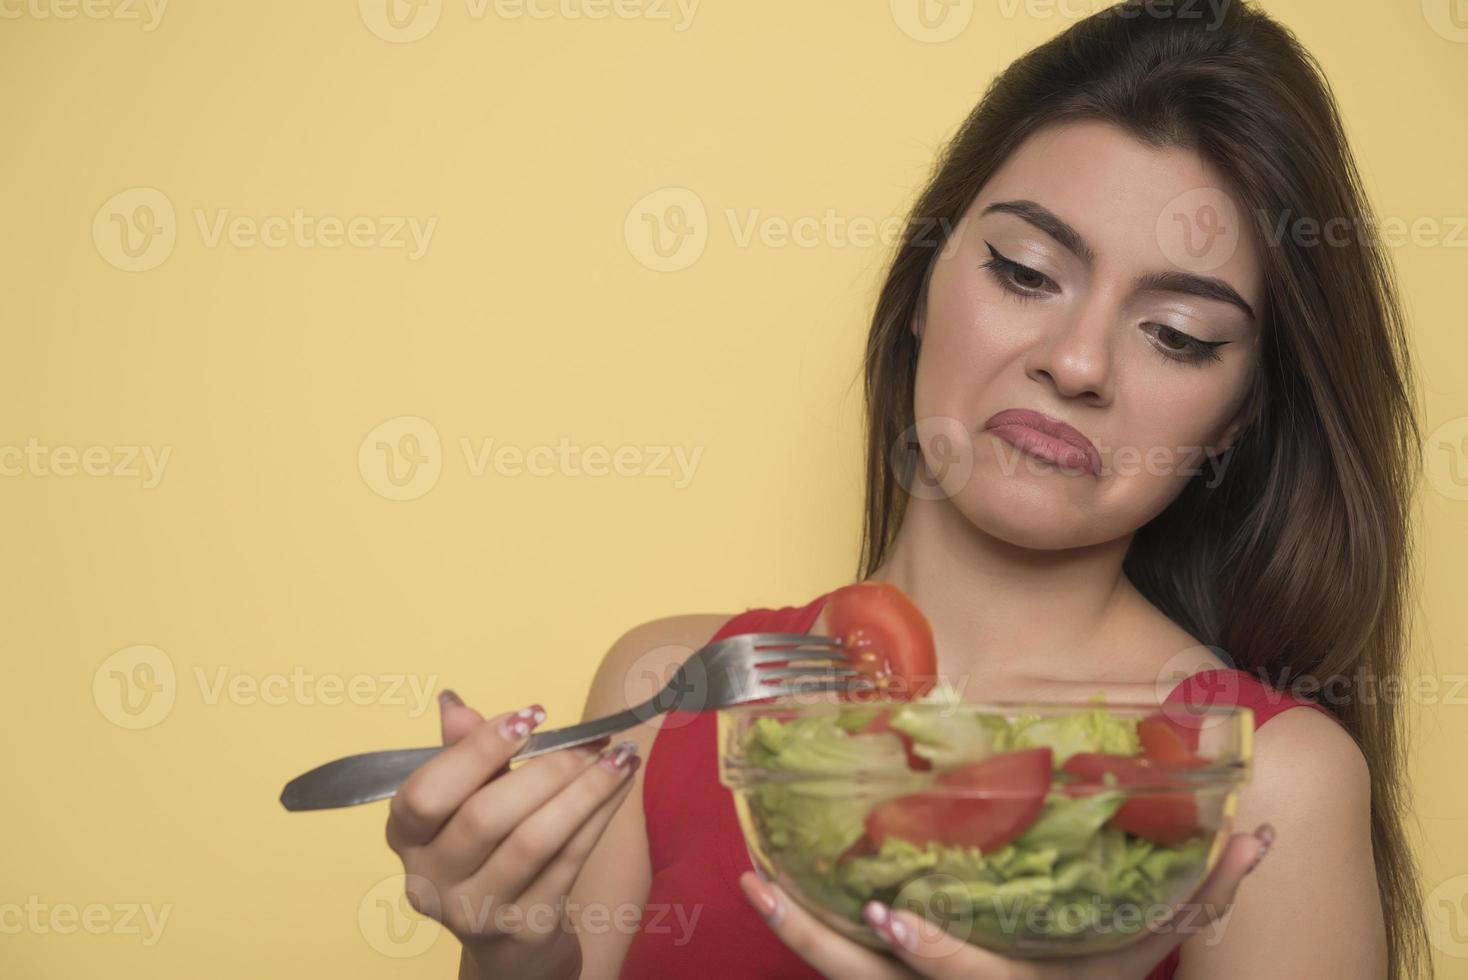 Porträt eines glücklichen, verspielten Mädchens, das frischen Salat aus einem Bogen isst foto